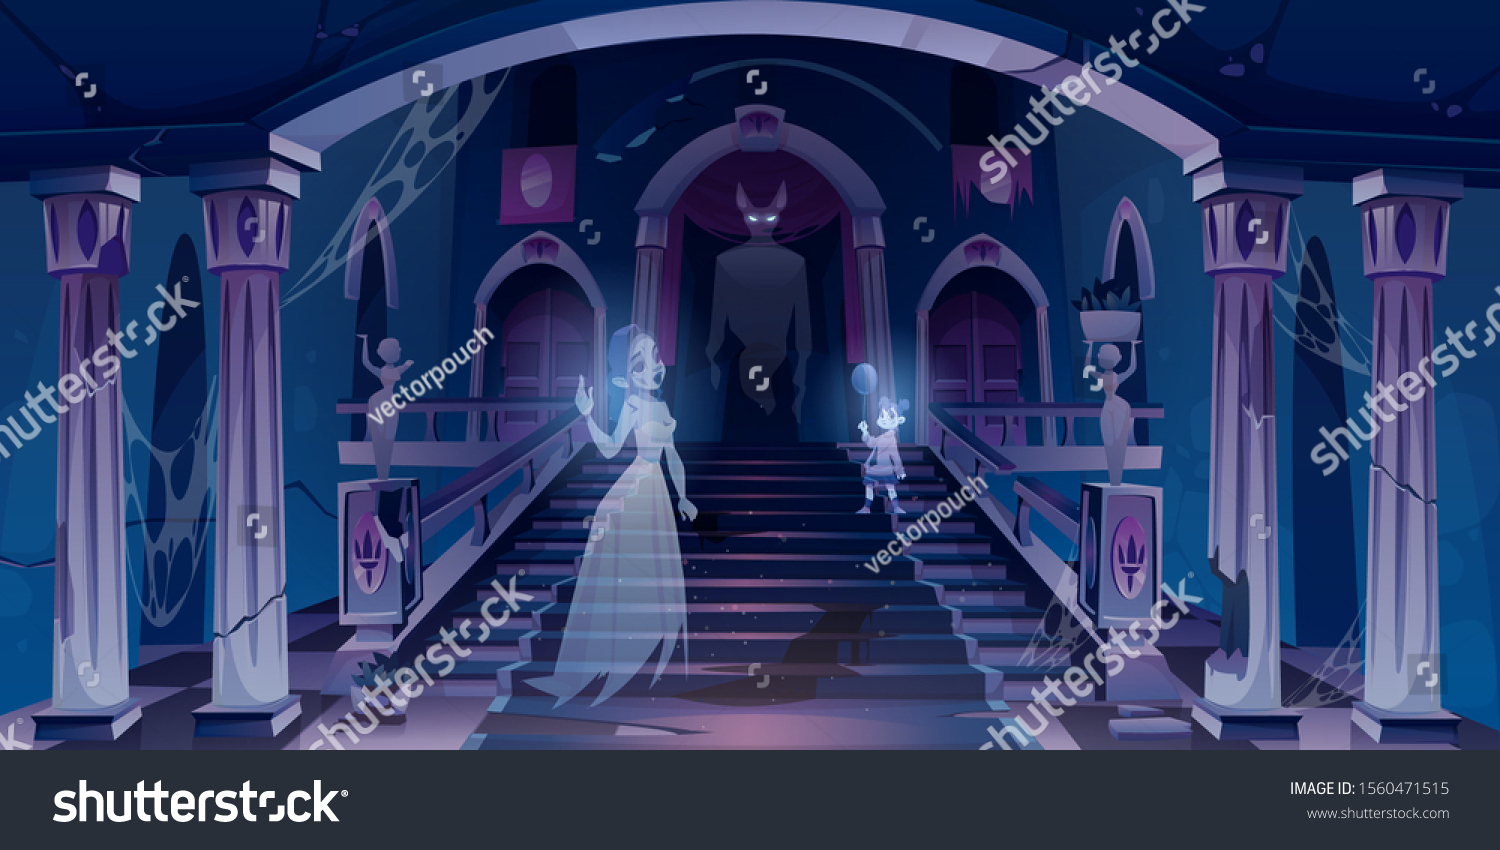 暗い怖い部屋の中を 階段を持つ幽霊が飛んでいる古い城 中庭の宮殿の玄関にクモの巣 ひびの入った柱と像 ハロウィーンの化け物のシーンベクターイラスト のベクター画像素材 ロイヤリティフリー